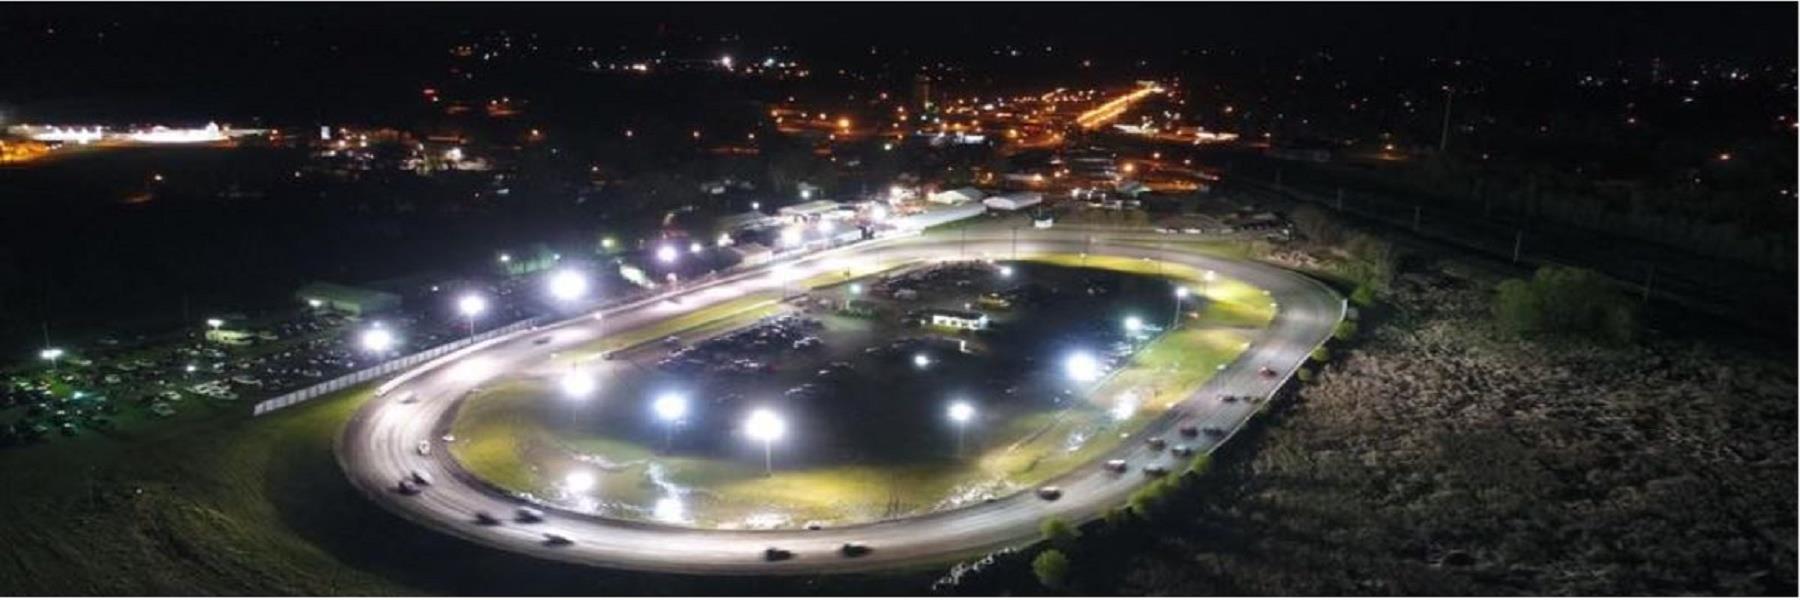 8/5/2022 - Fiesta City Speedway